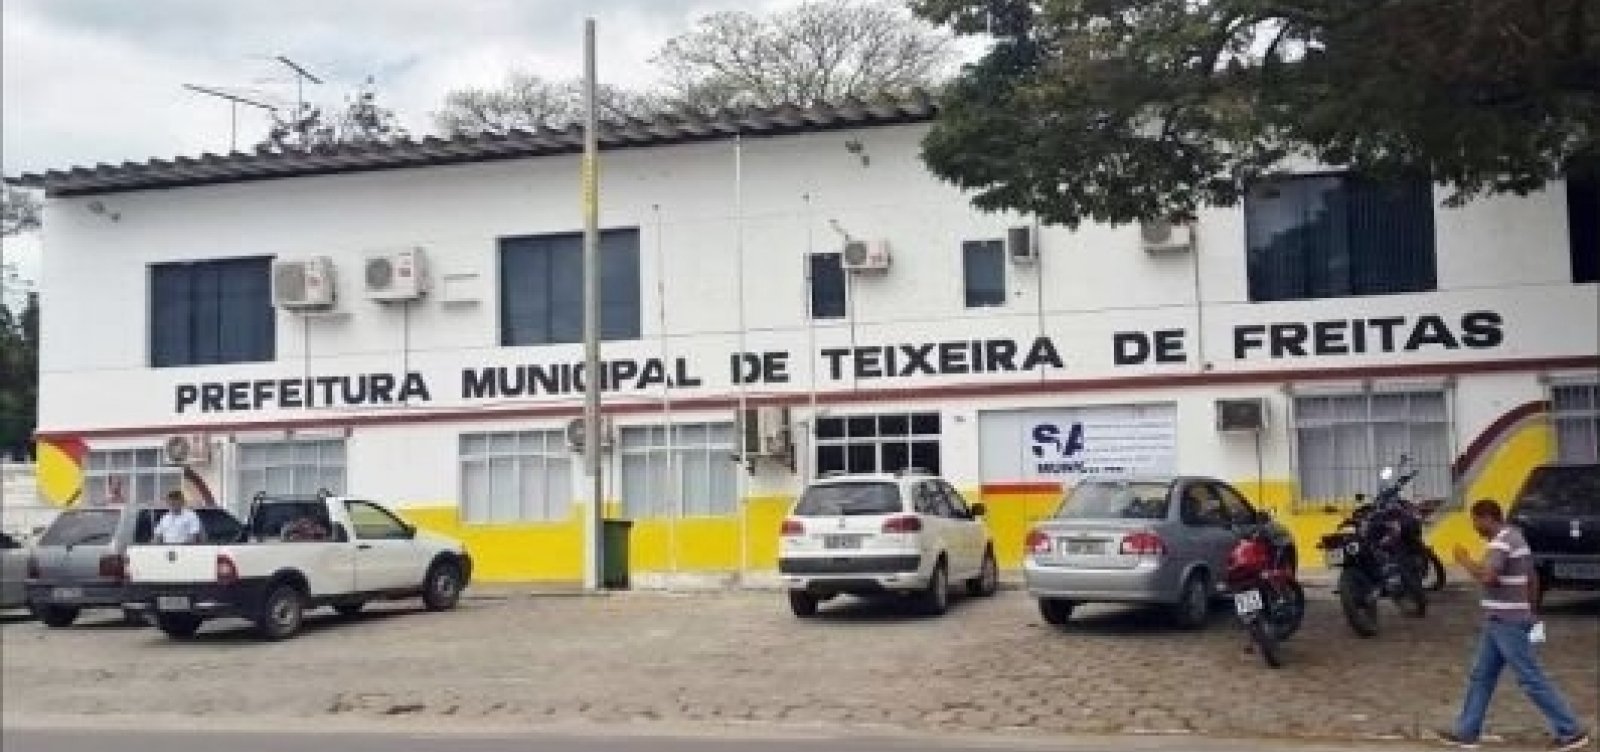 Justiça bloqueia R$ 3 milhões em contas da prefeitura de Teixeira de Freitas